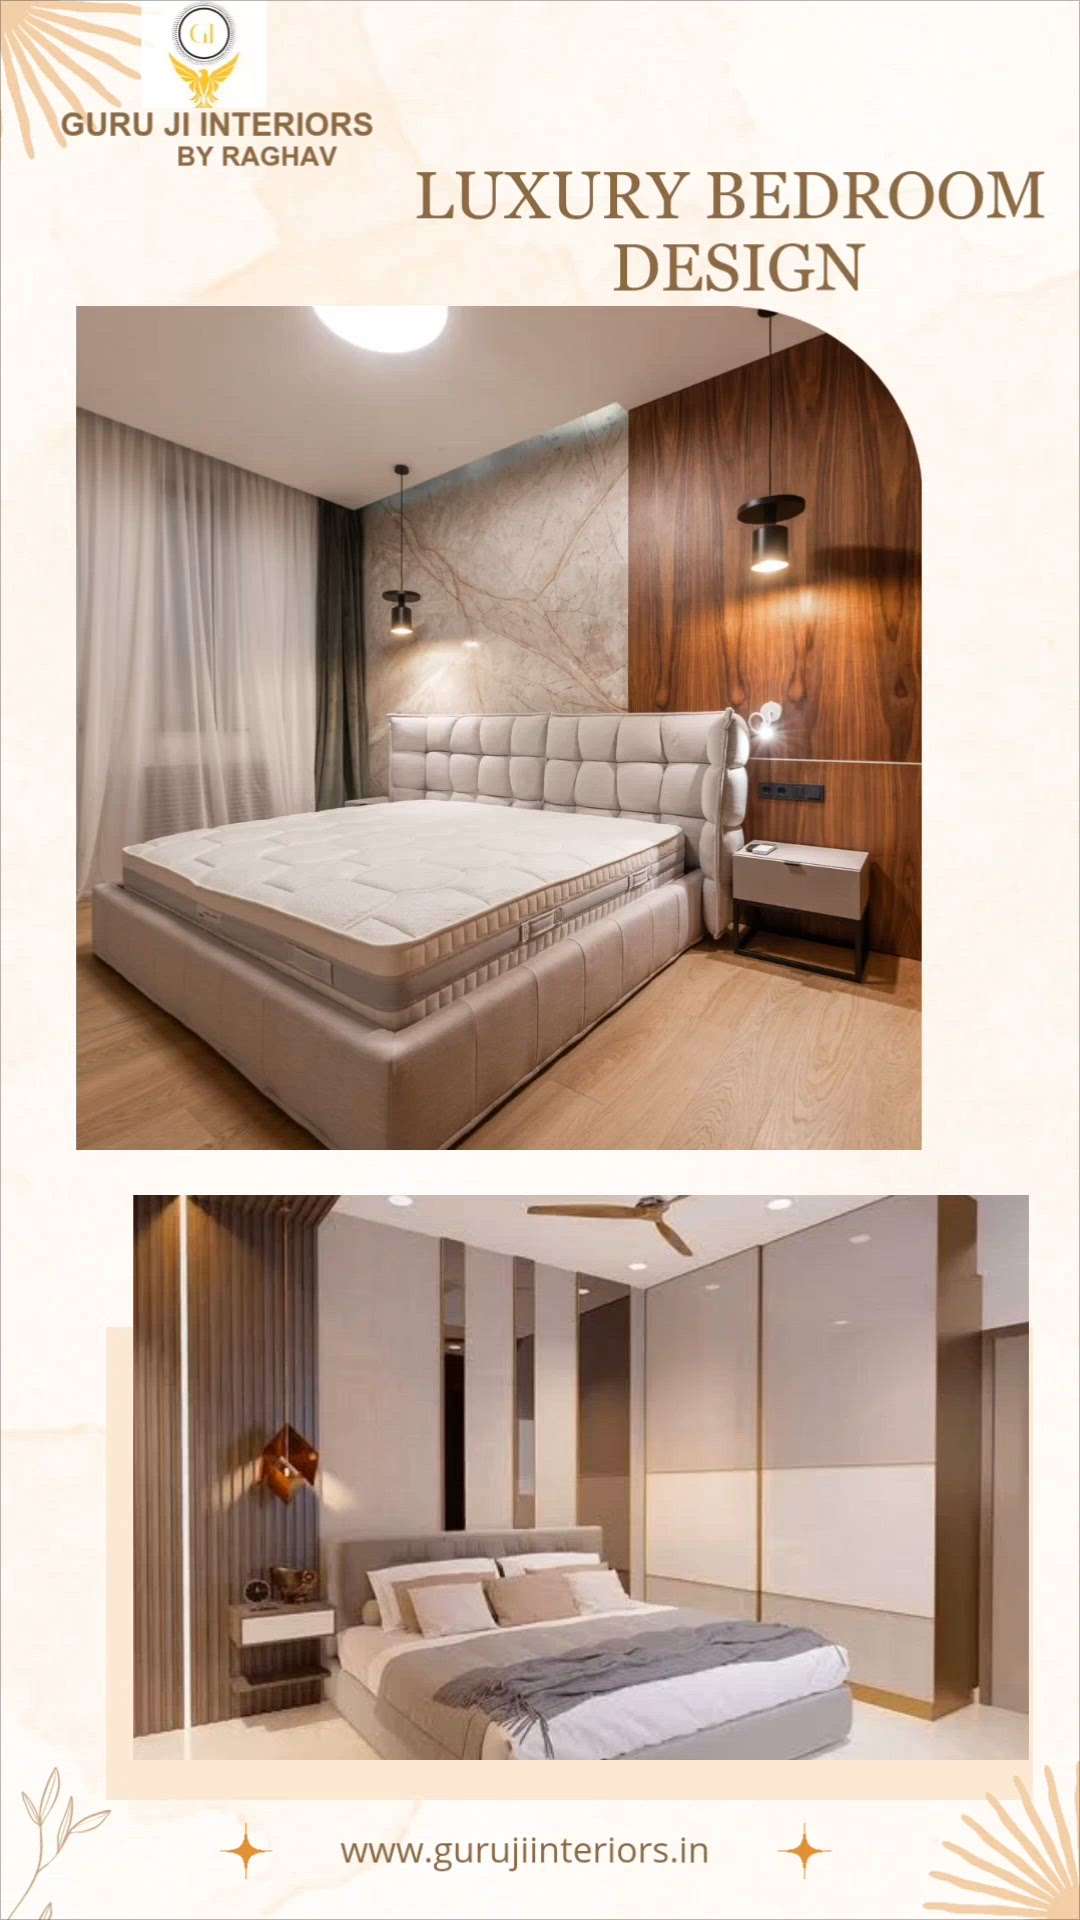 ✨ Luxury Bedroom Interior design! Like this design? Follow for more.
Designed by - Raghav 
Guru Ji Interiors 
Call -9870533947 
.
#Gurujiinterios 
#Interiordesign #bedroomdesign
#bedroomdecor #interiors